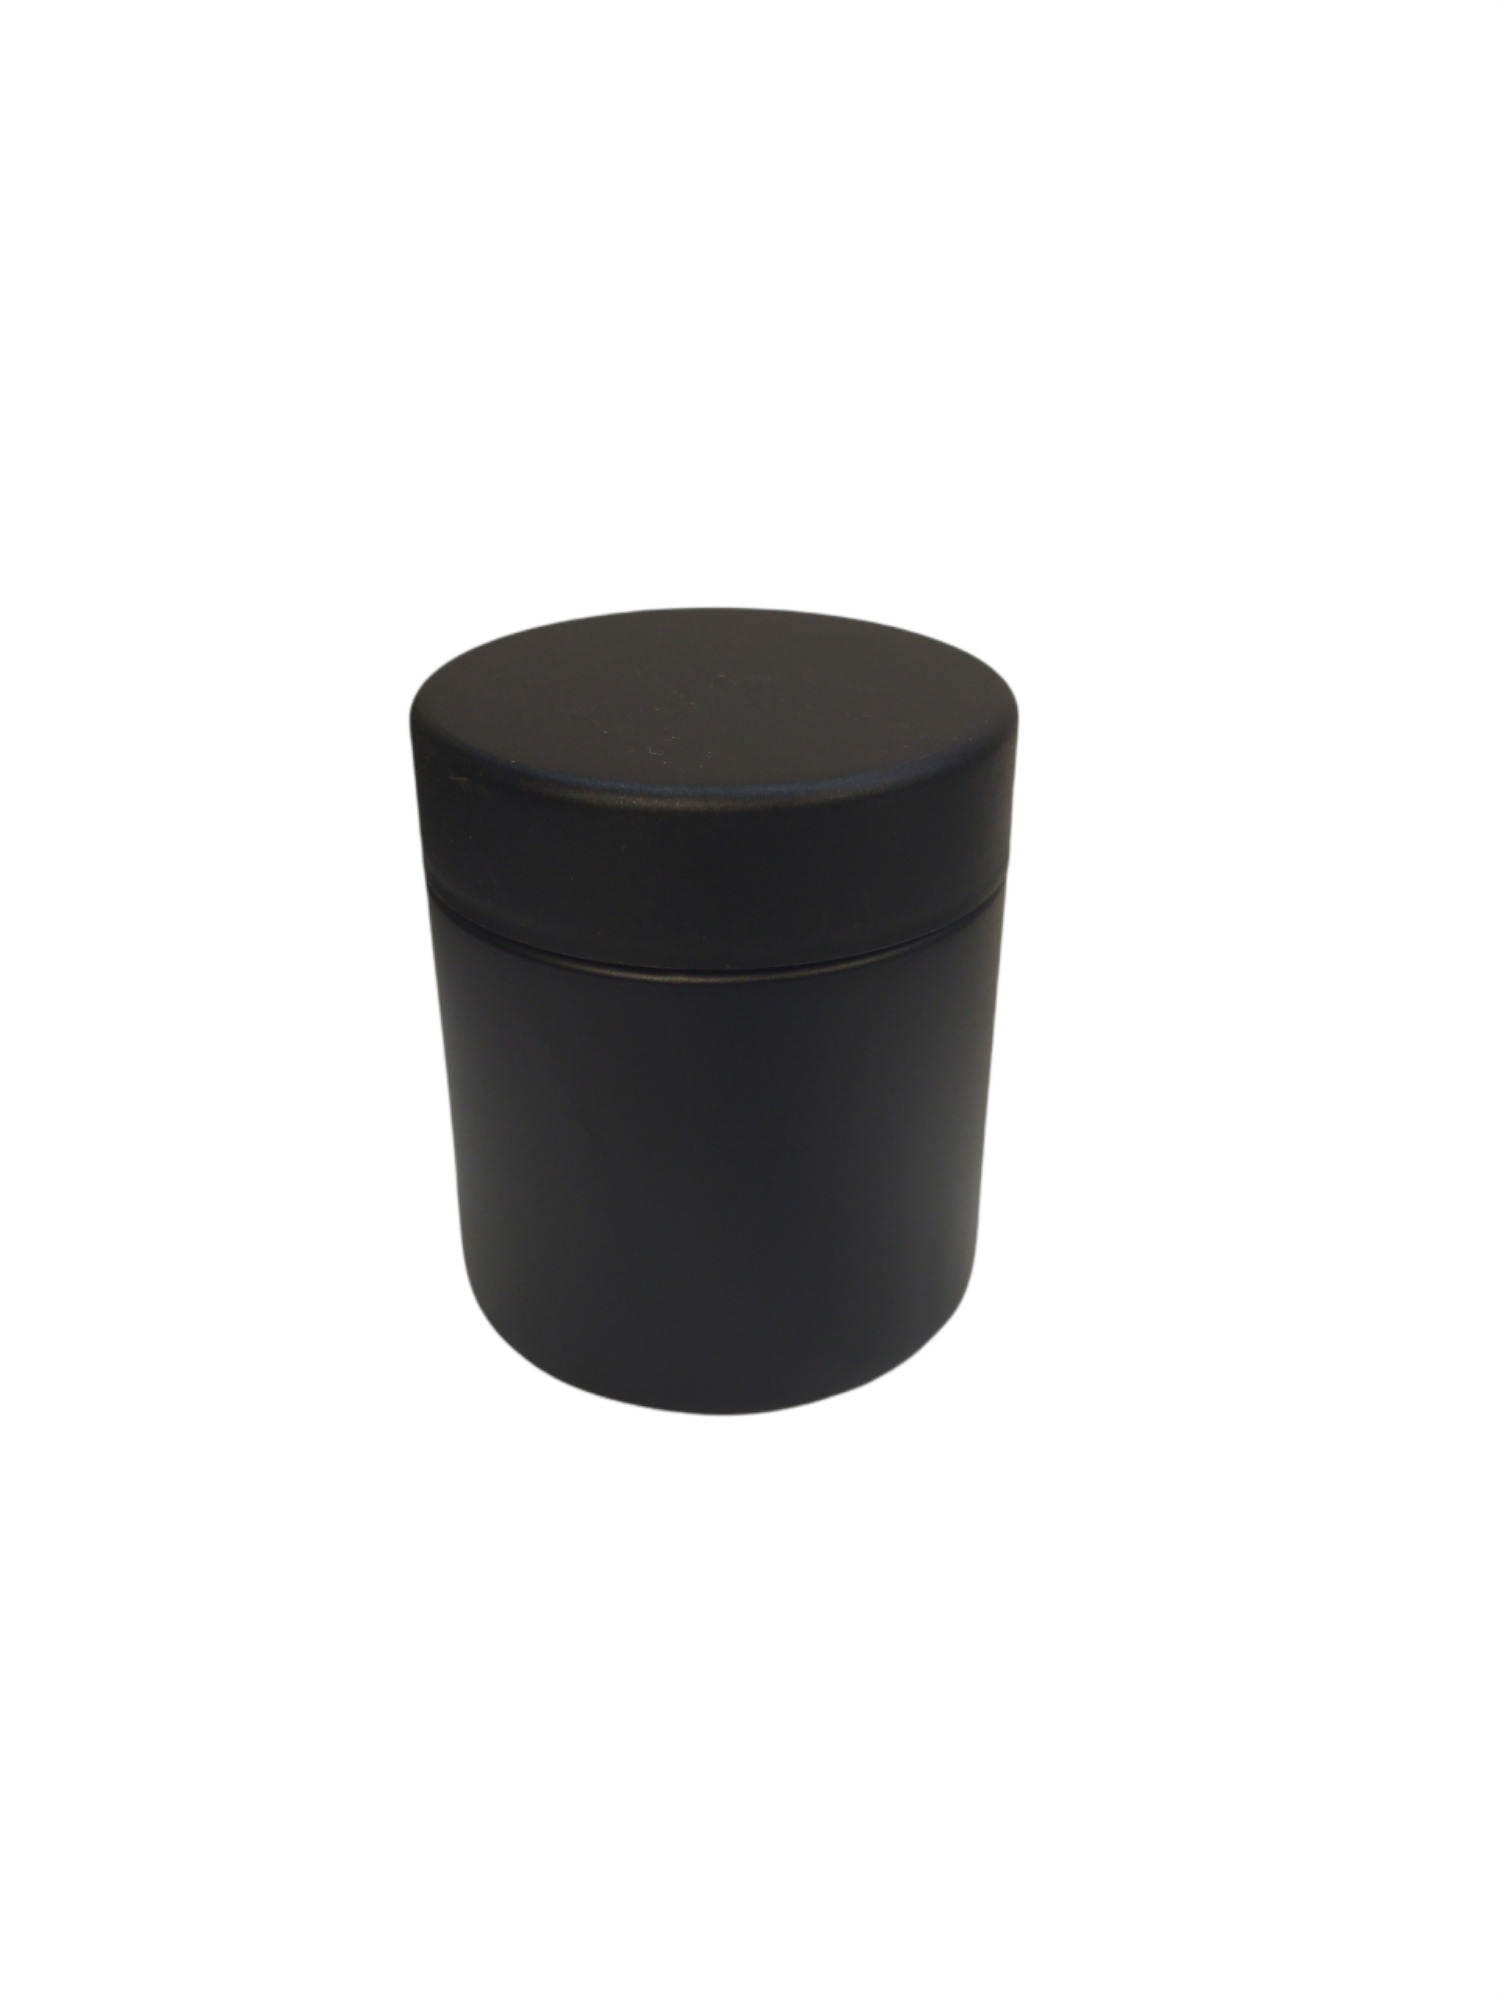 black 3 ounce jar